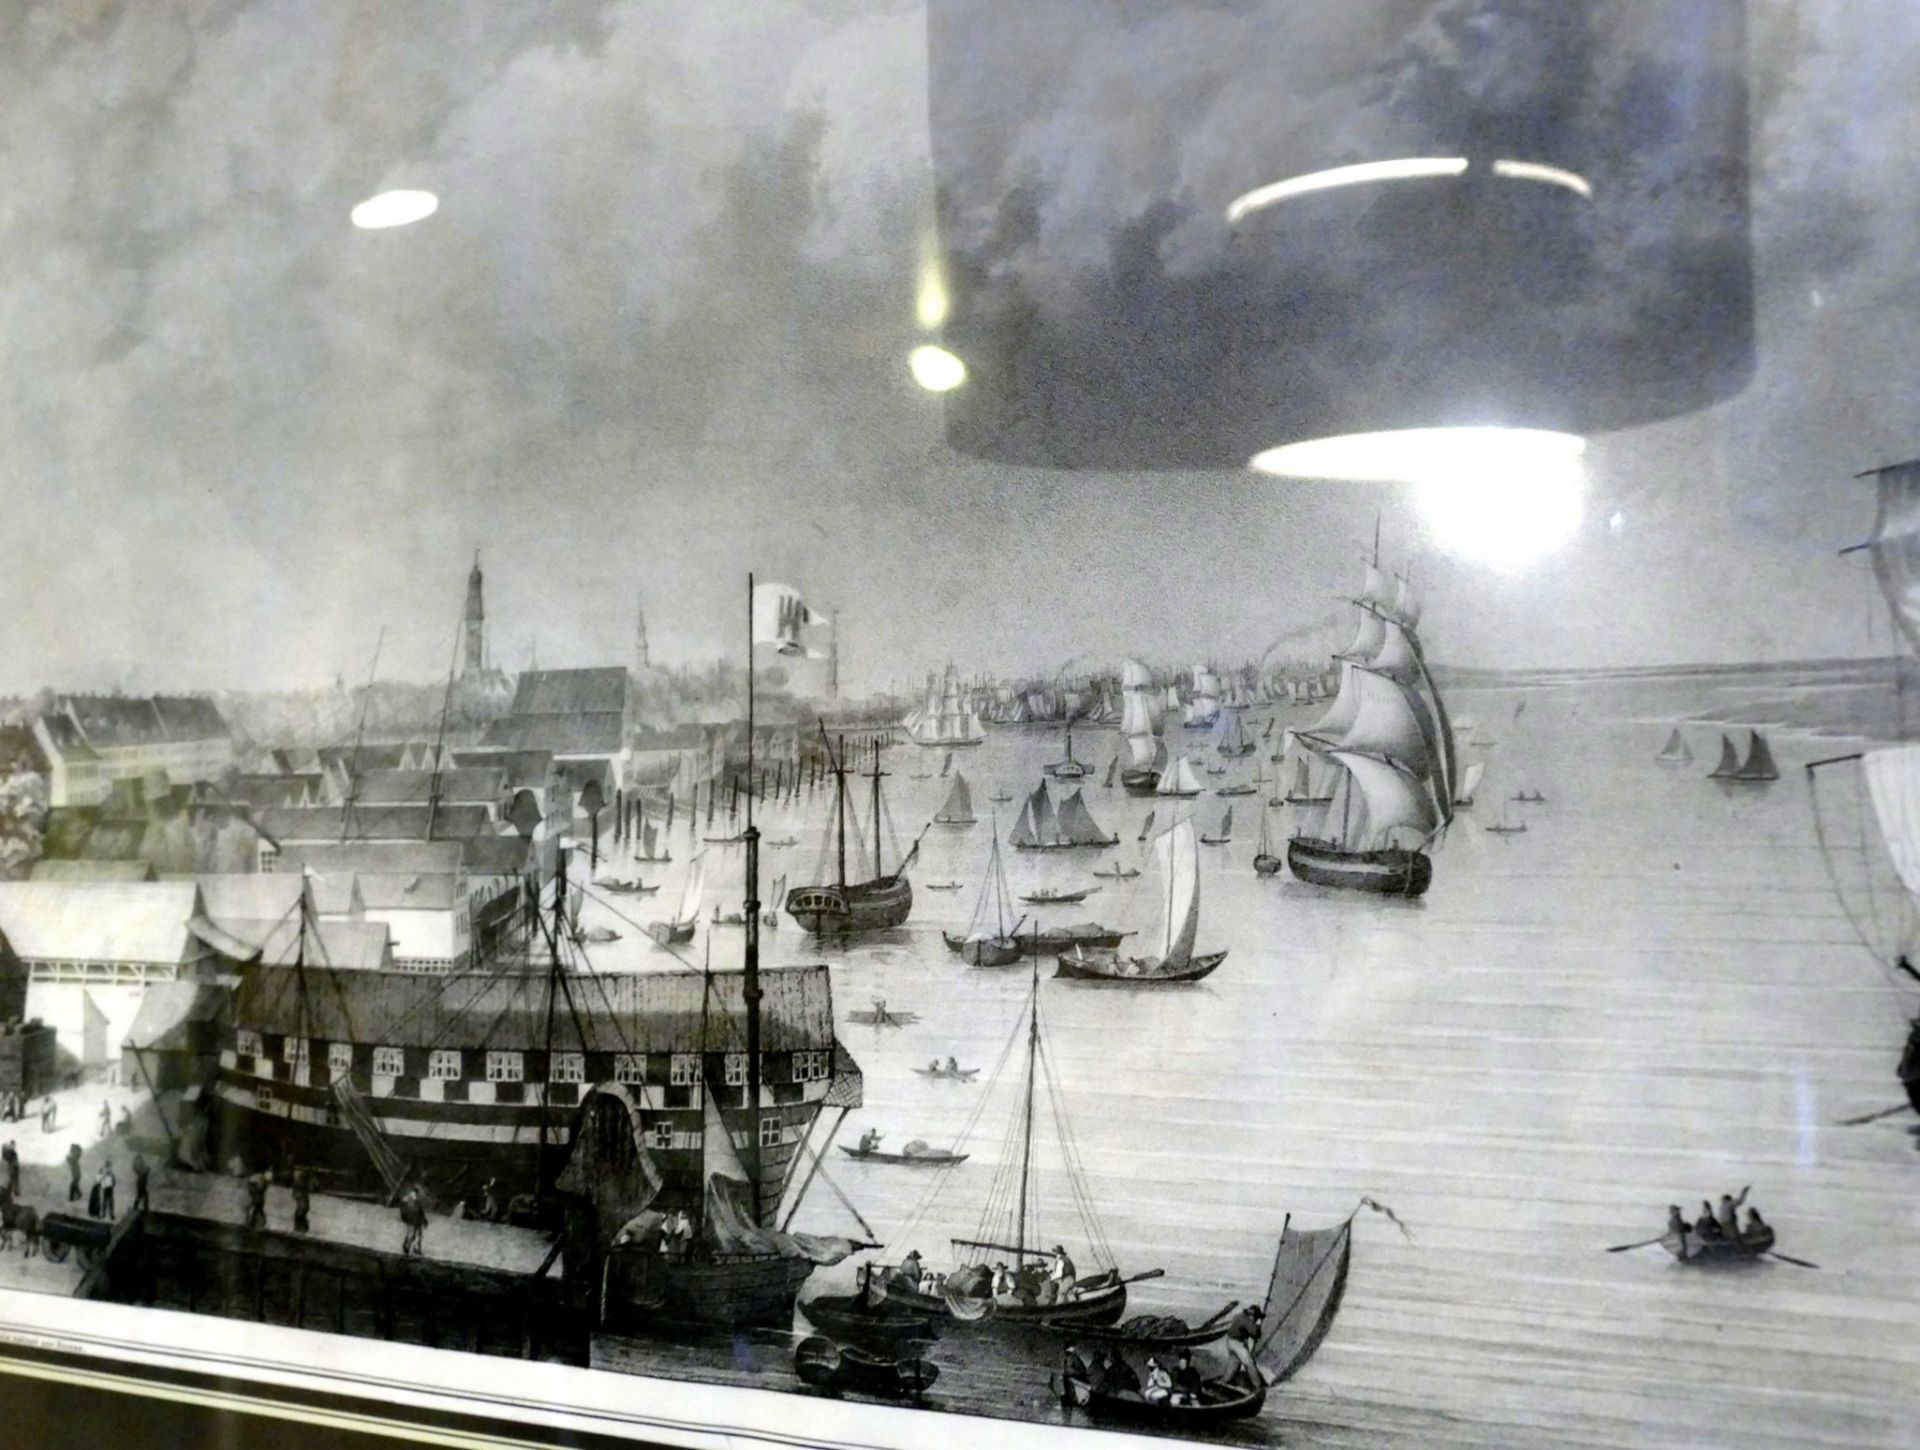 grosse Lithografie nach A.Kaufmann, Hamburger Hafen, 19.Jhd., ger/Glas, leicht fleckig, RG 56x75 cm - Bild 4 aus 6